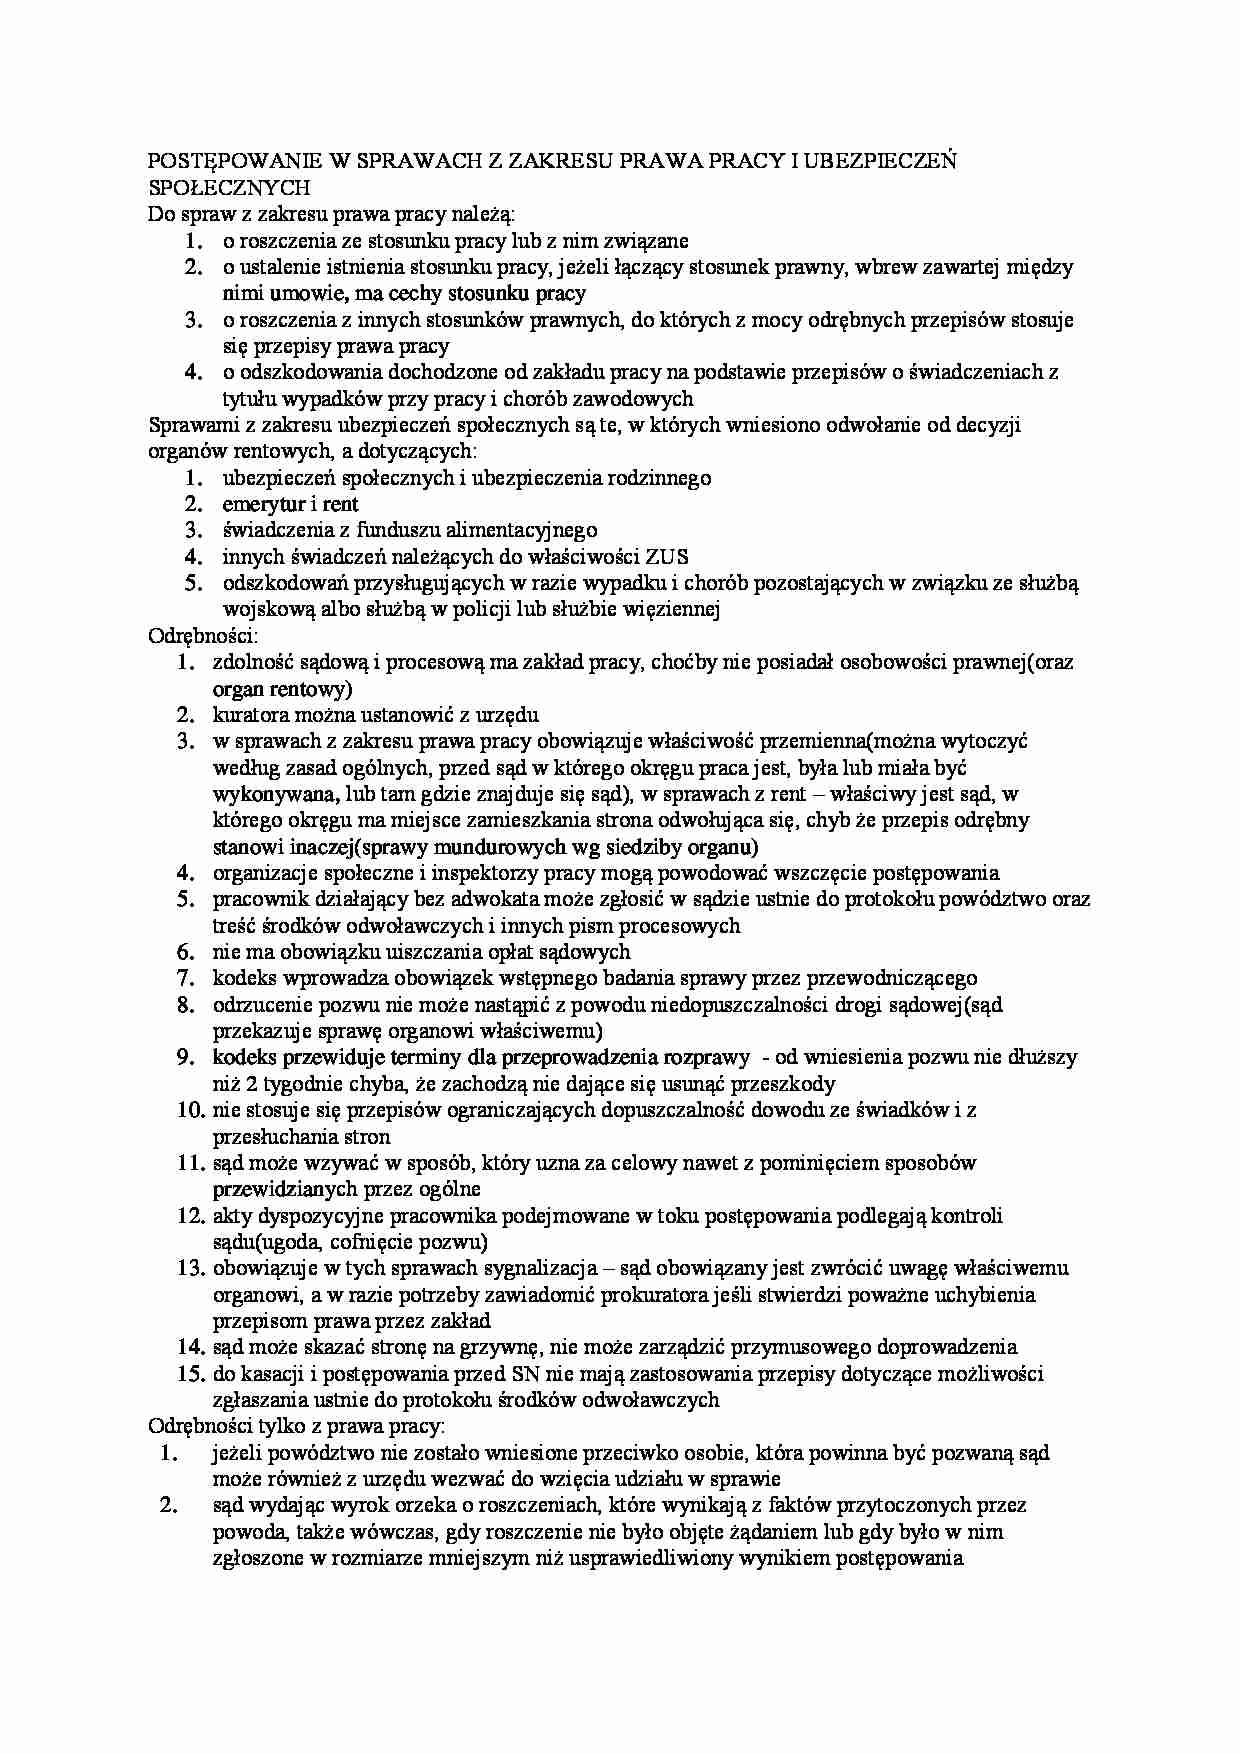 Postępowania z prawa pracy - omówienie - strona 1